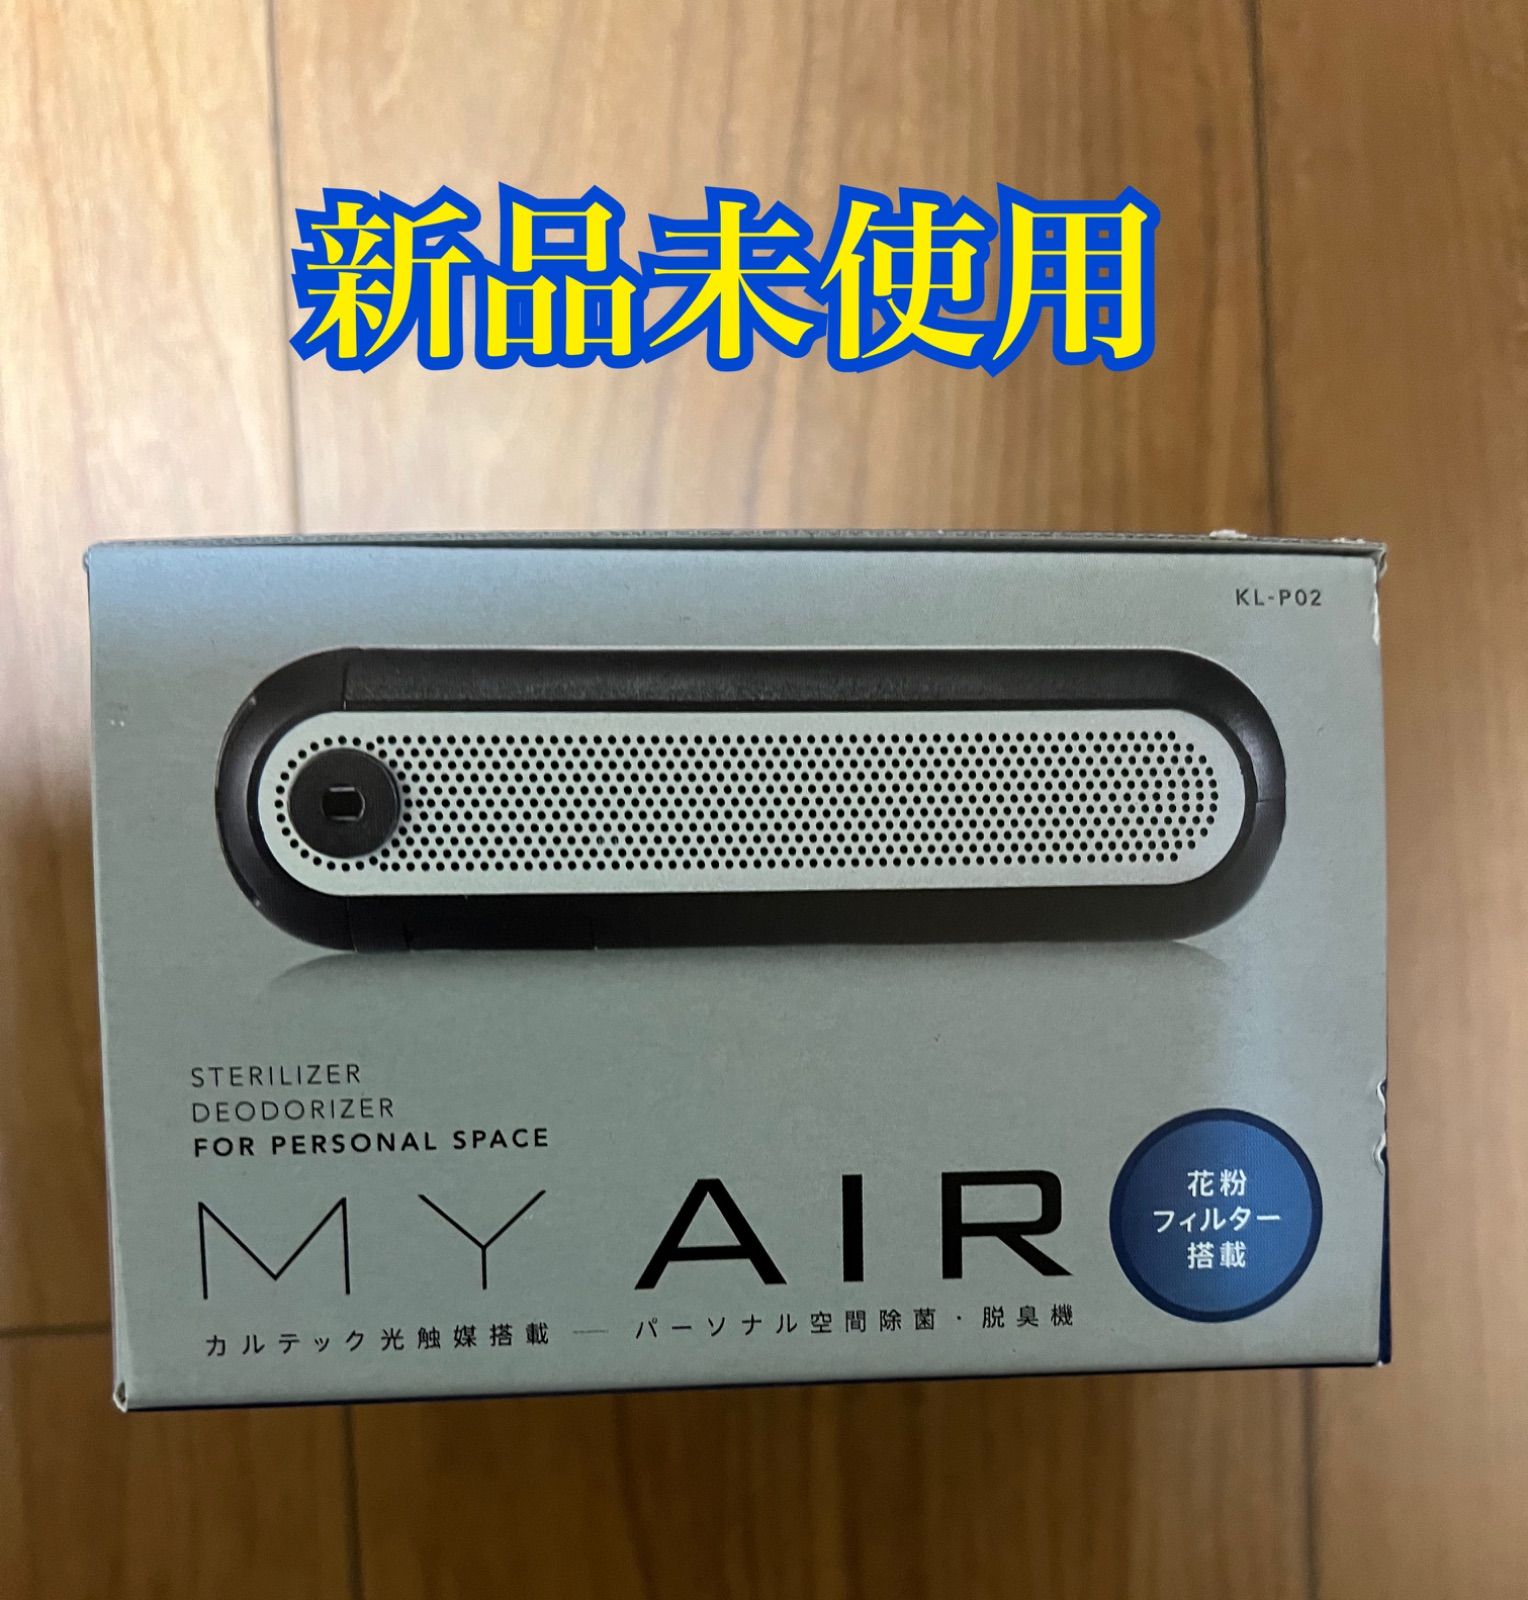 カルテック「MY AIR」パーソナル除菌・脱臭機 - 空調